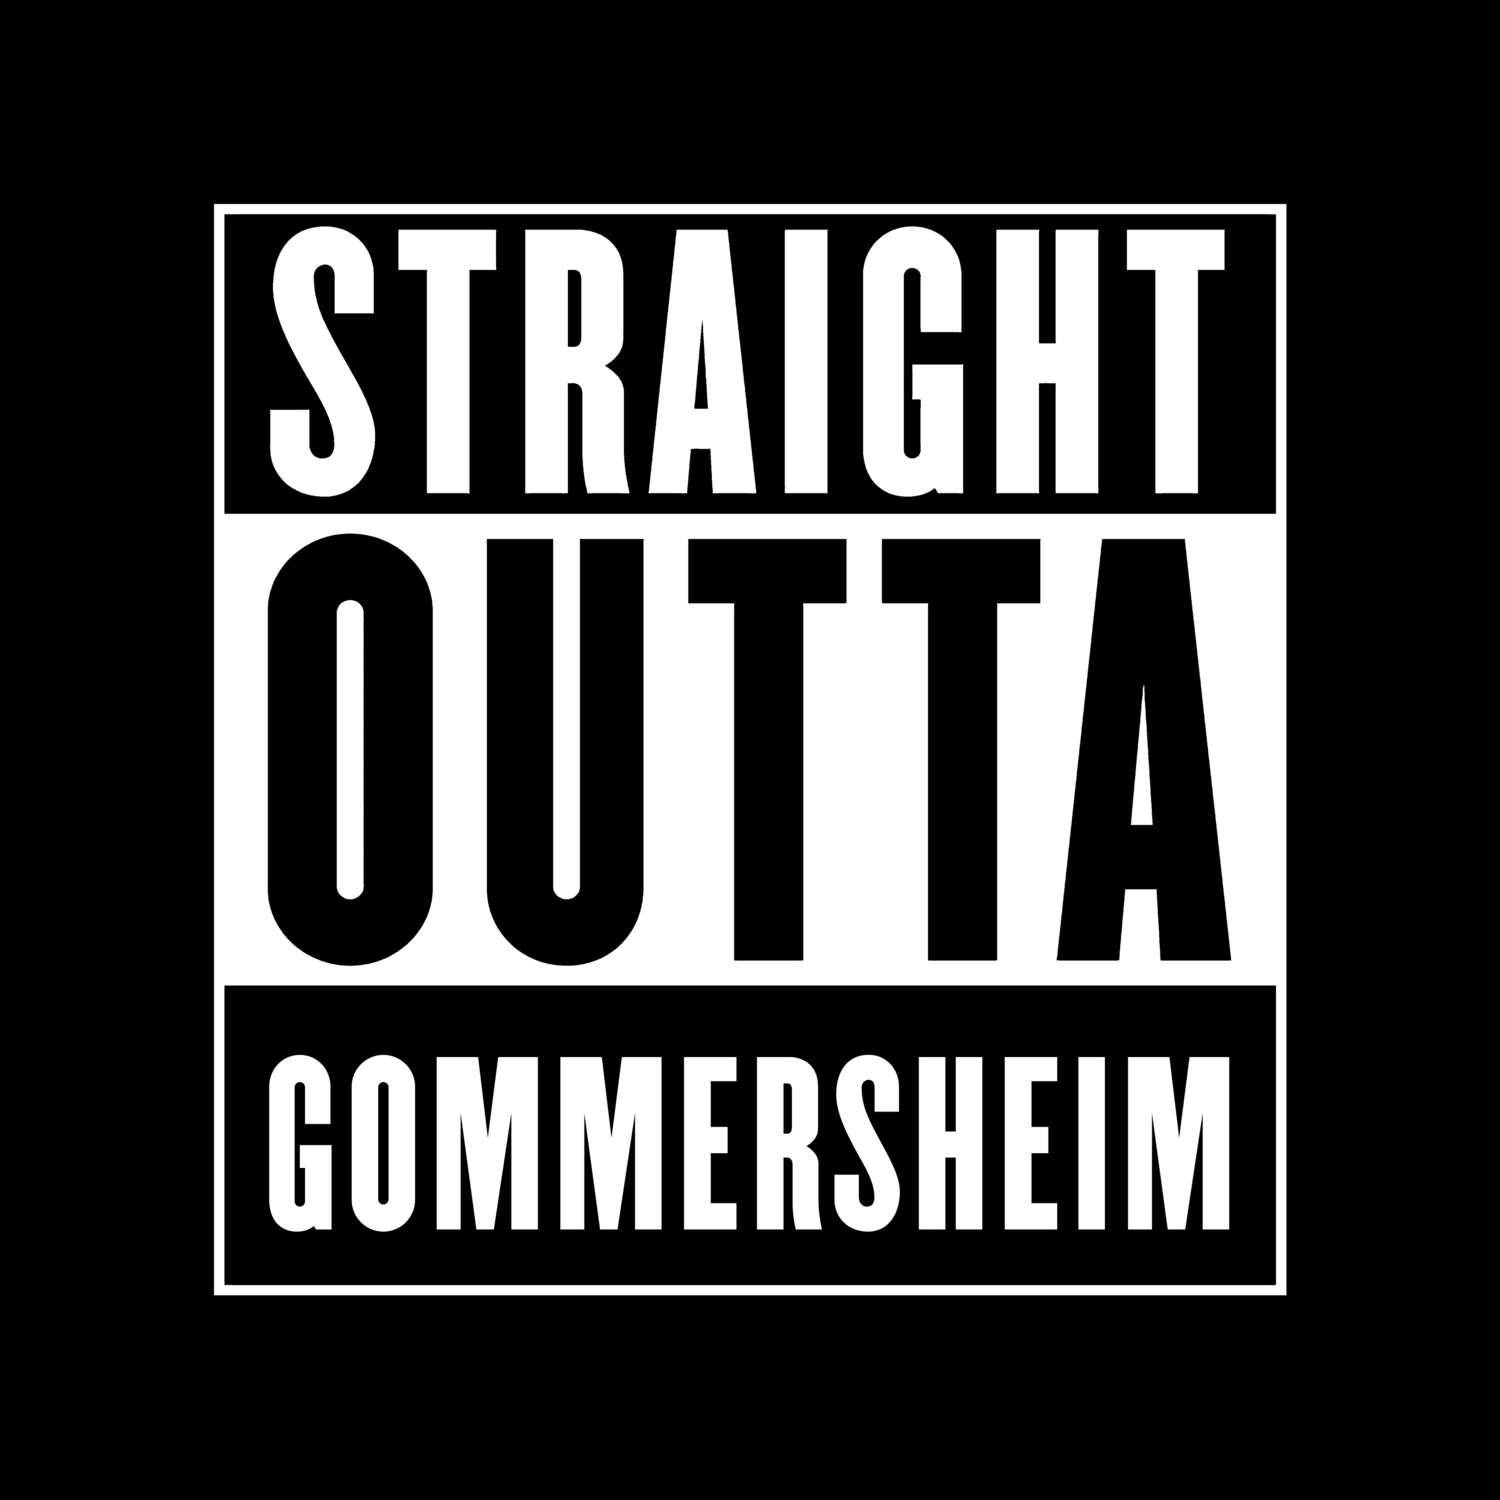 Gommersheim T-Shirt »Straight Outta«